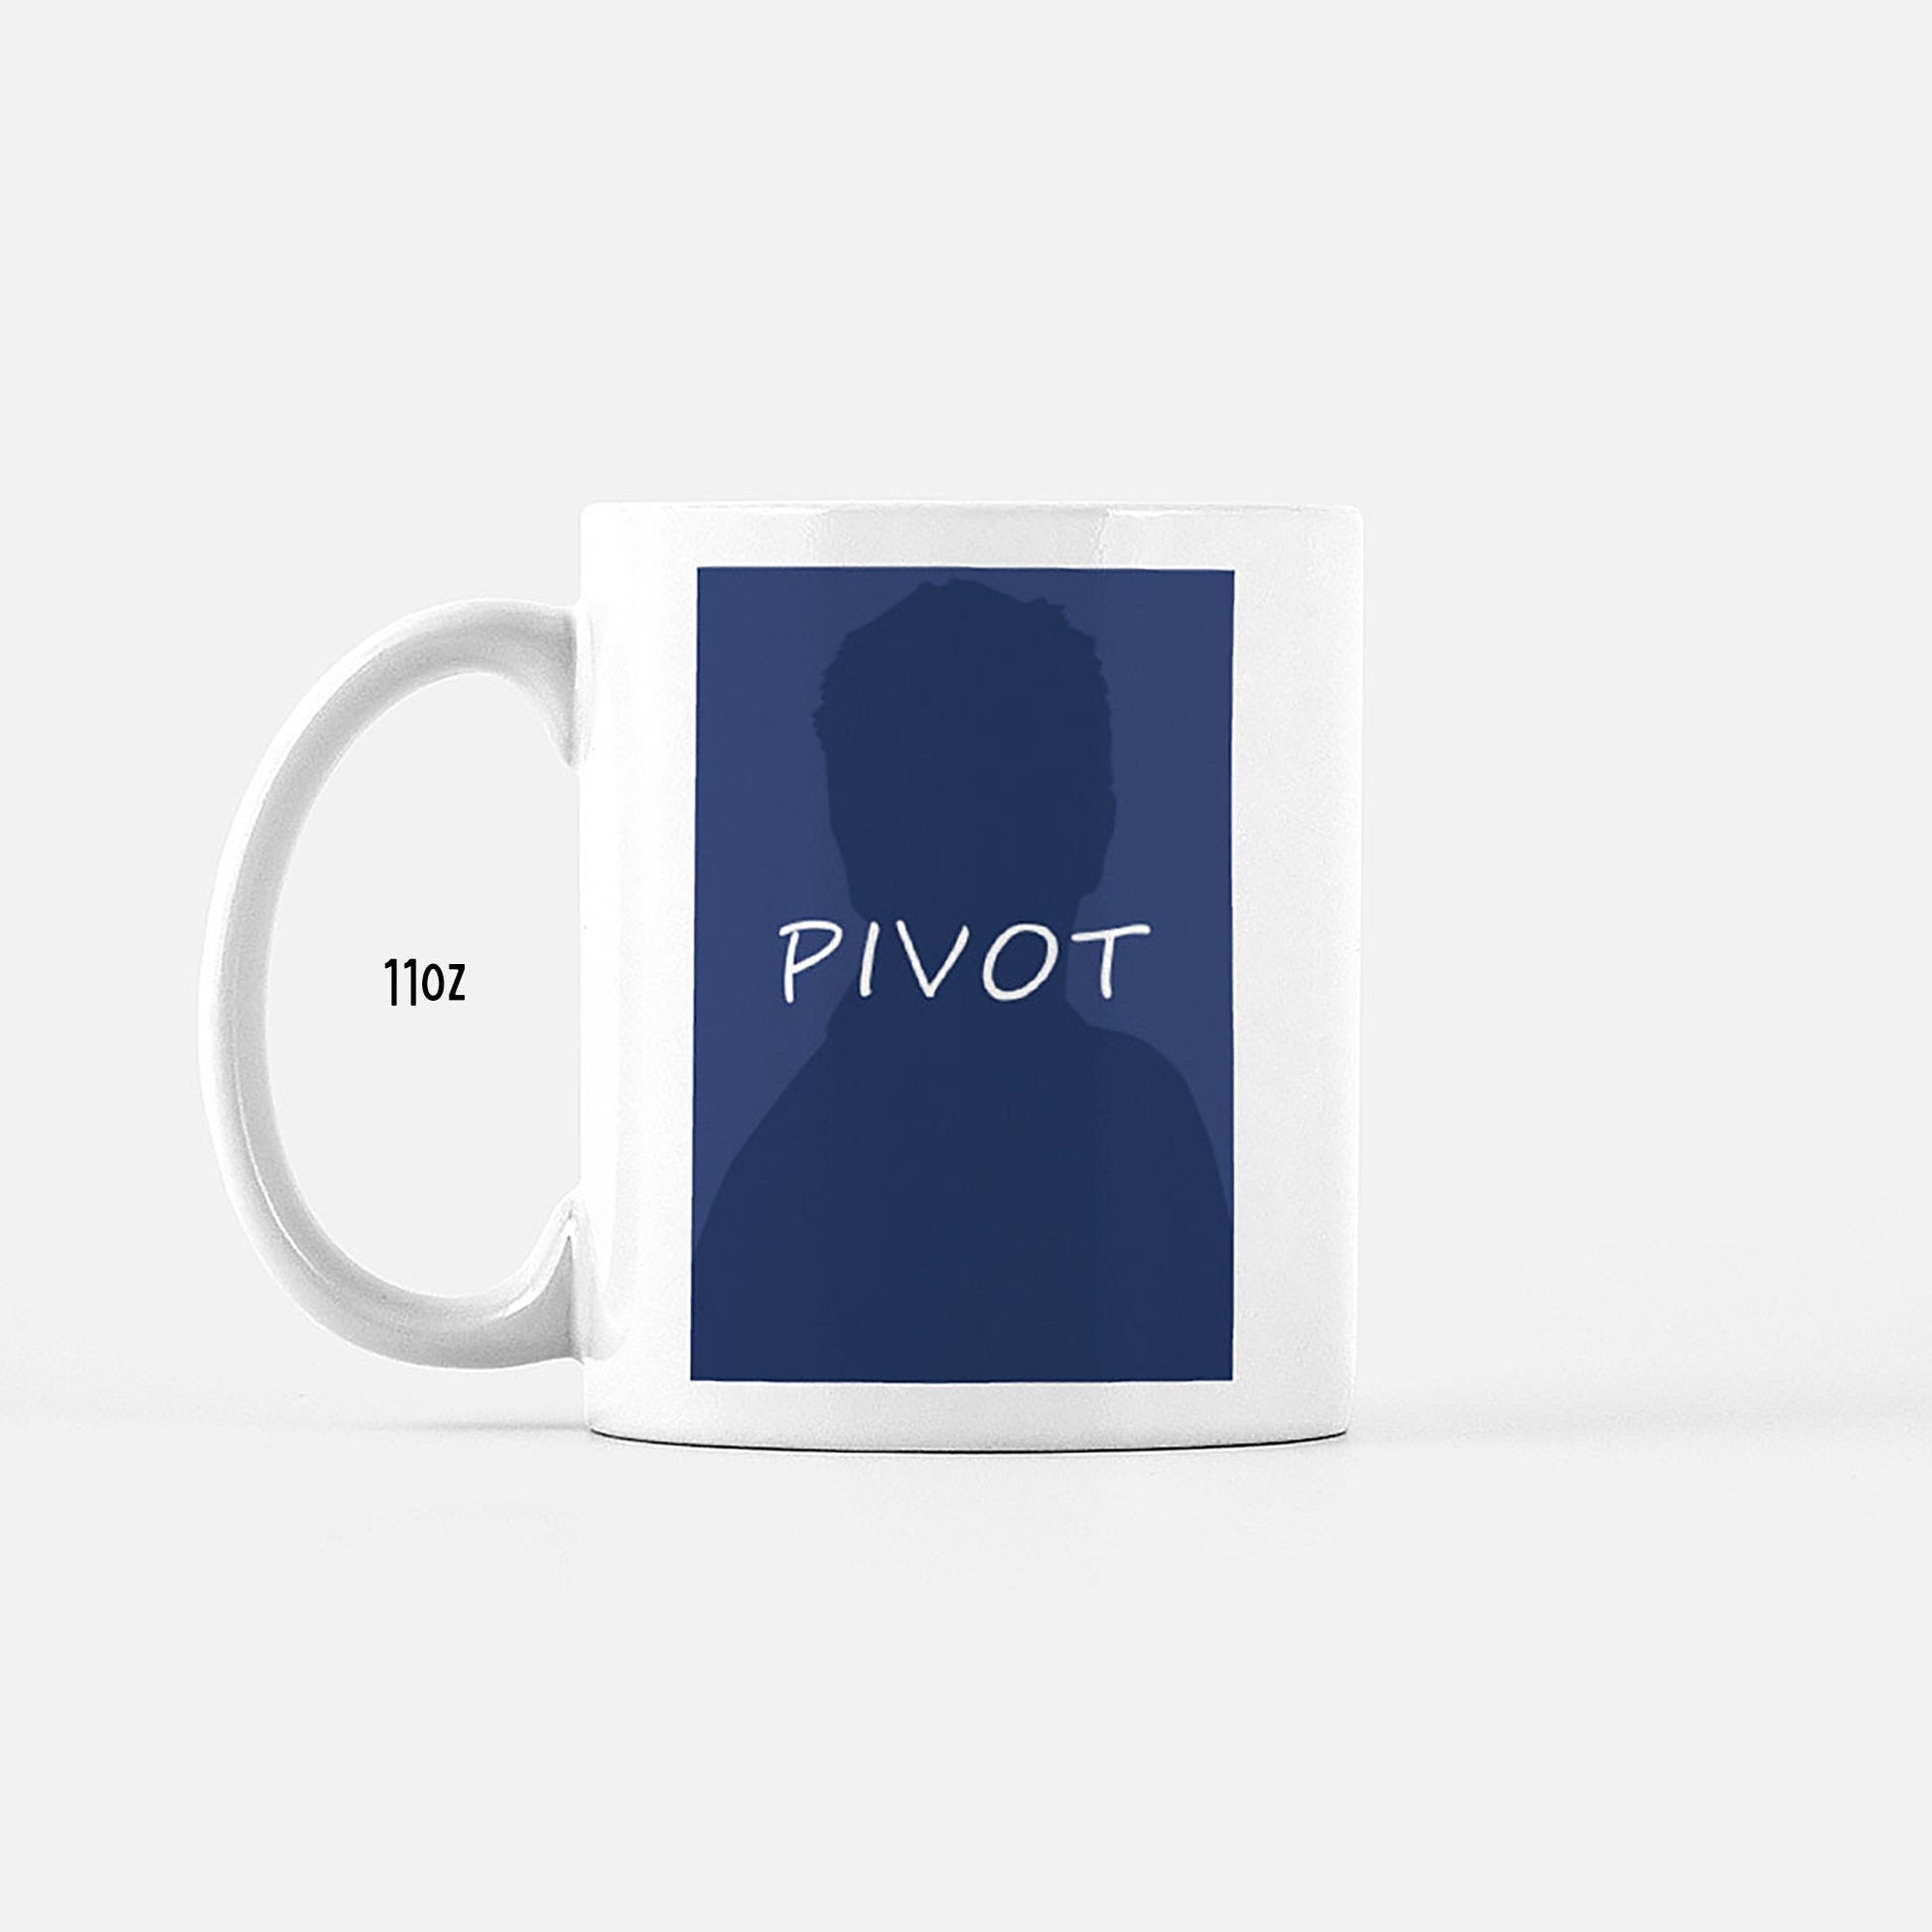 Pivot mug - Friends tv show gift